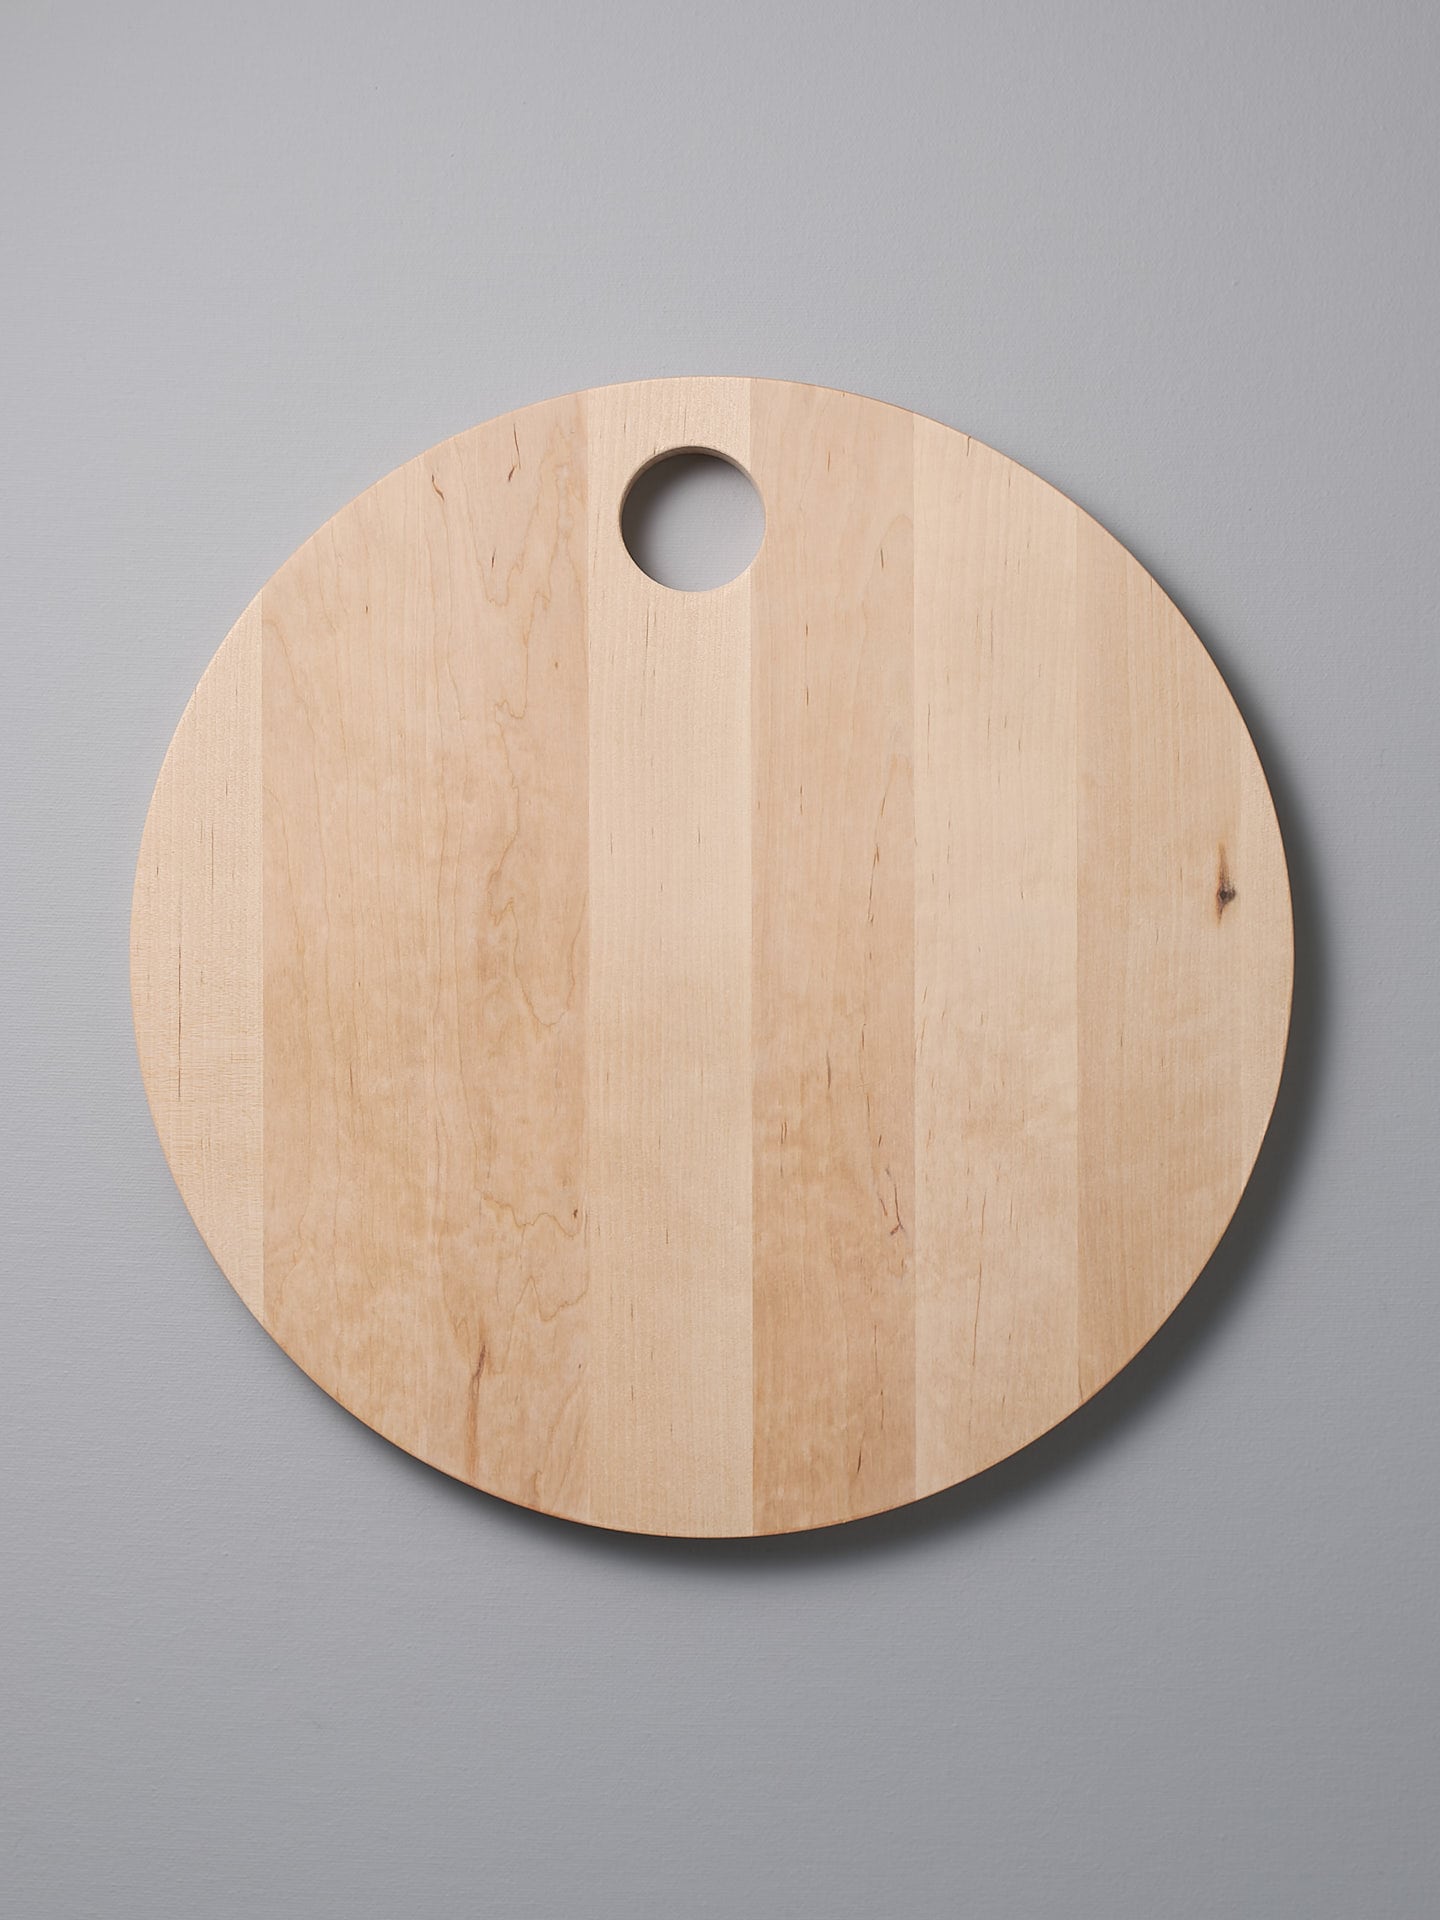 An Iris Hantverk Birch Chopping Board - Round with a hole at top.